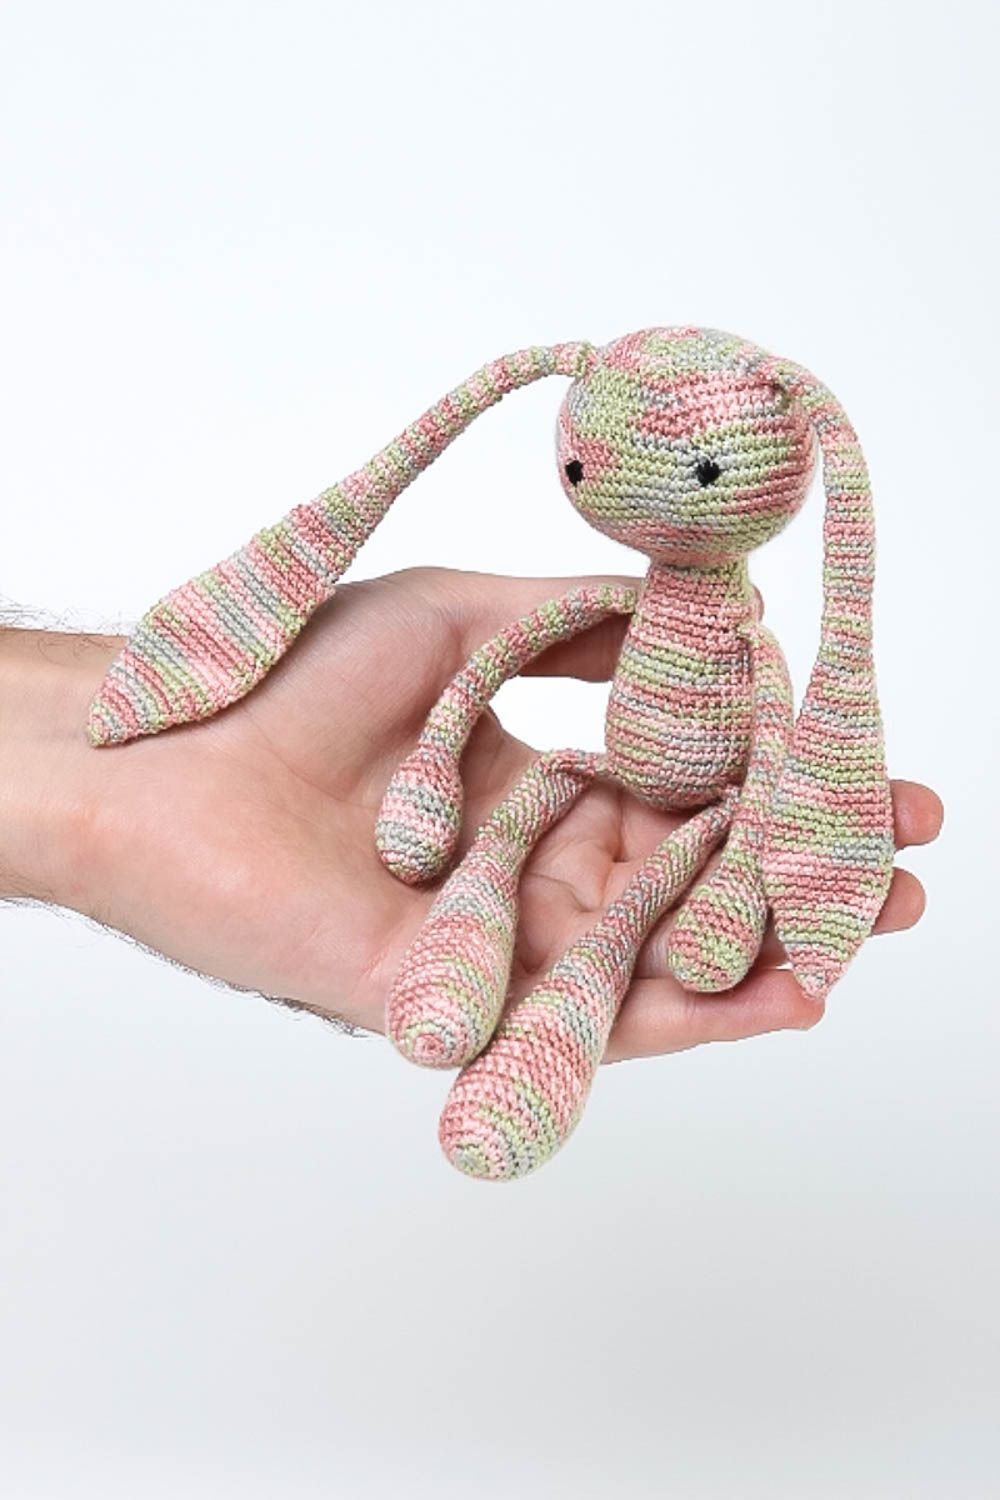 Juguete artesanal tejido a ganchillo peluche para niños regalo original  foto 5